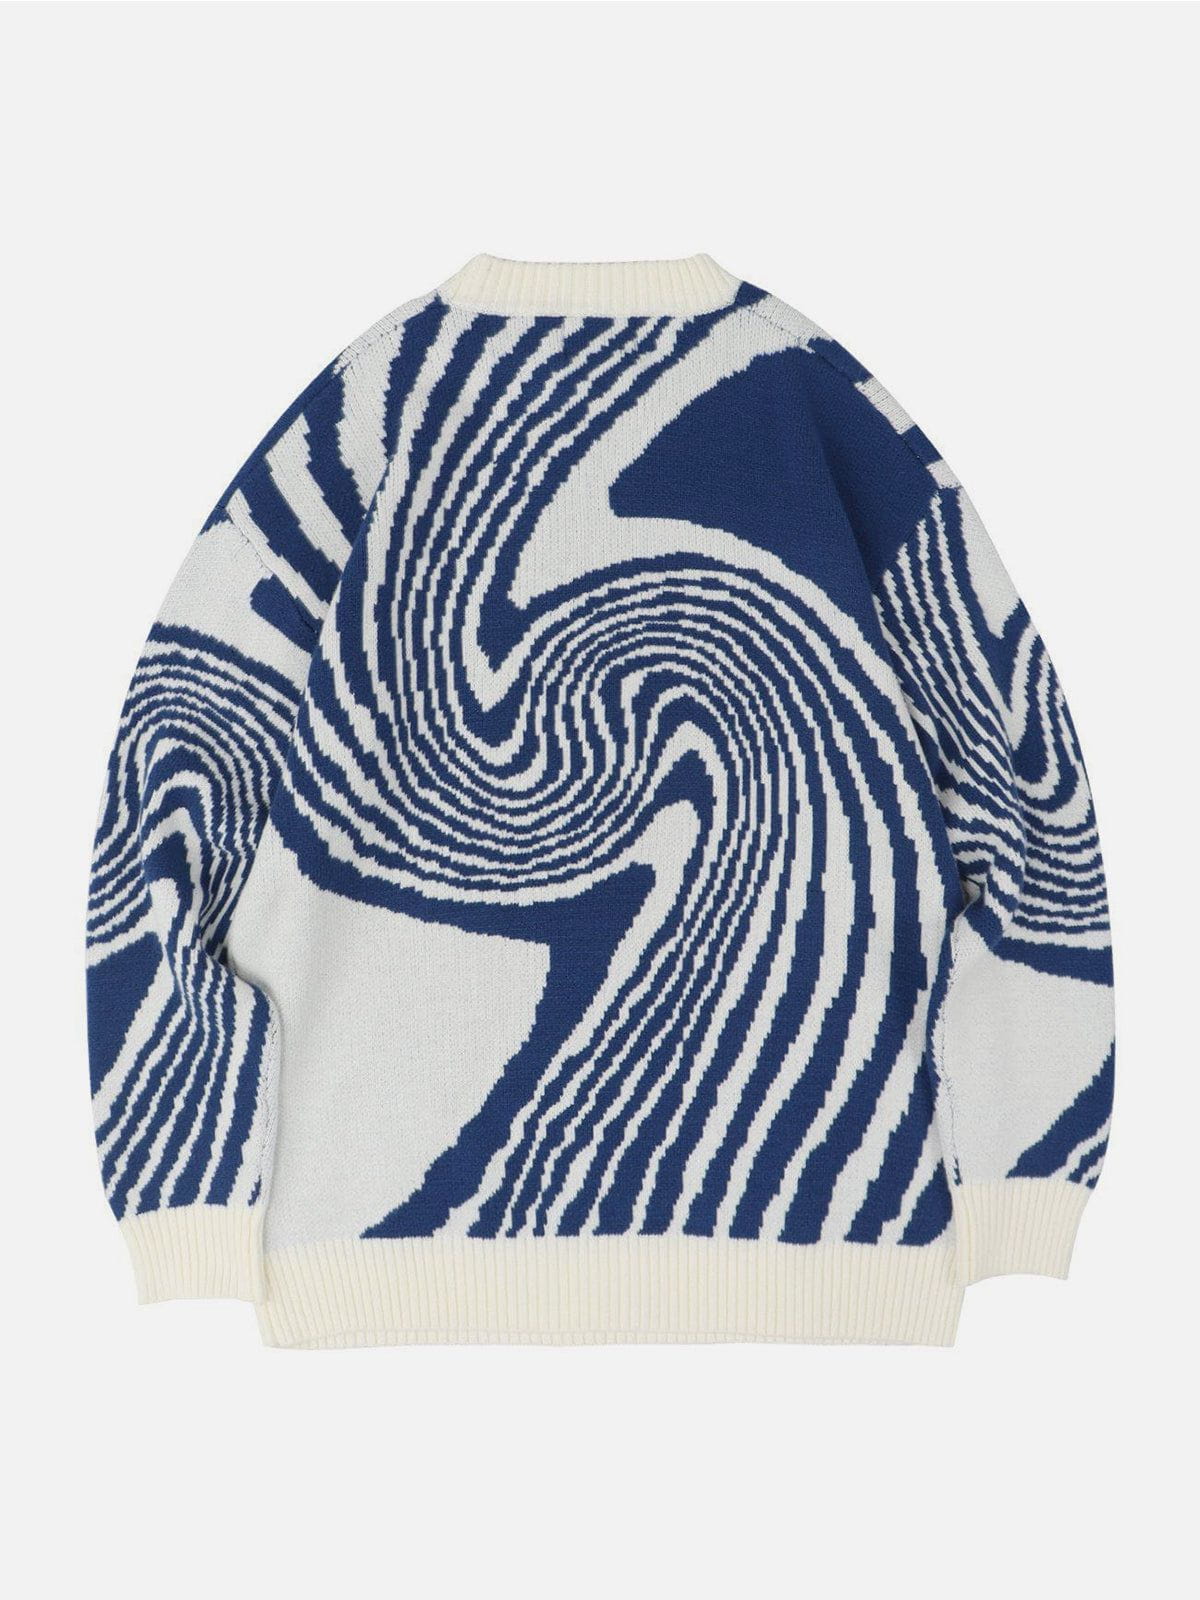 Whirlpool Knit Sweater Streetwear Brand Techwear Combat Tactical YUGEN THEORY